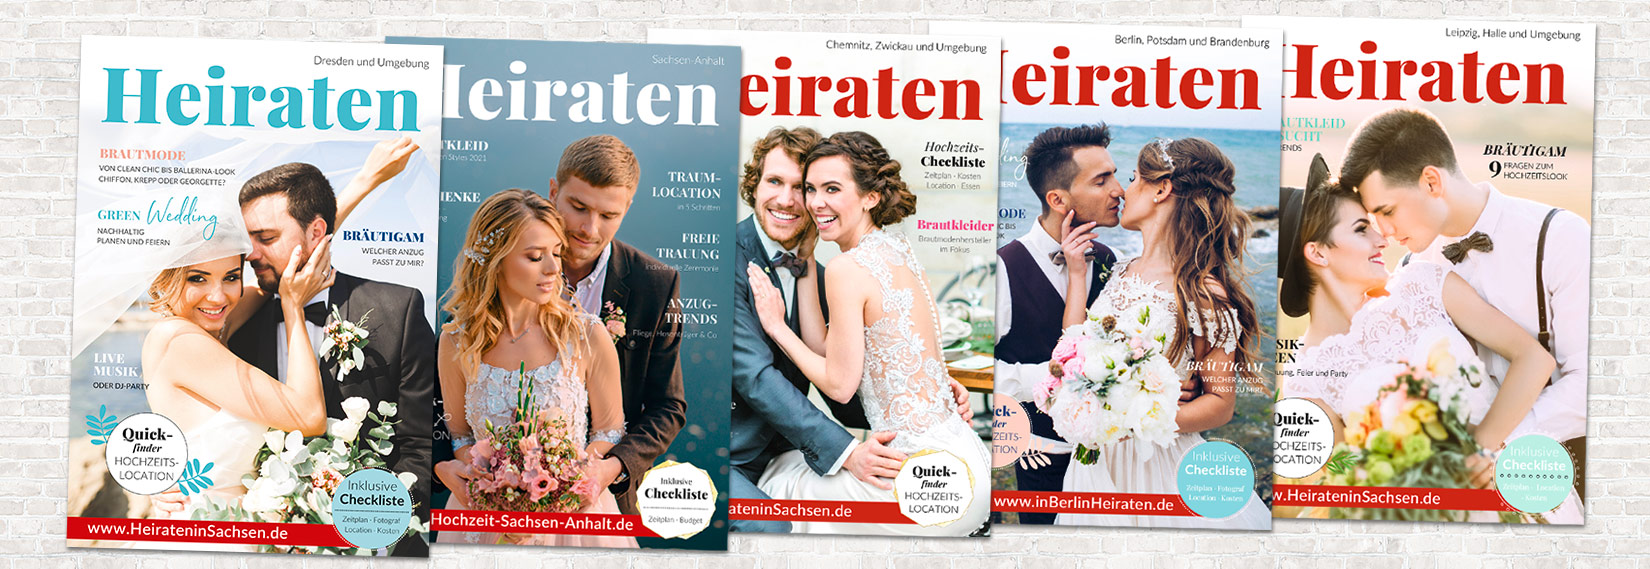 Magazine Heiraten für Dresden, Chemnitz, Leipzig, Berlin/Brandenburg und Sachsen-Anhalt